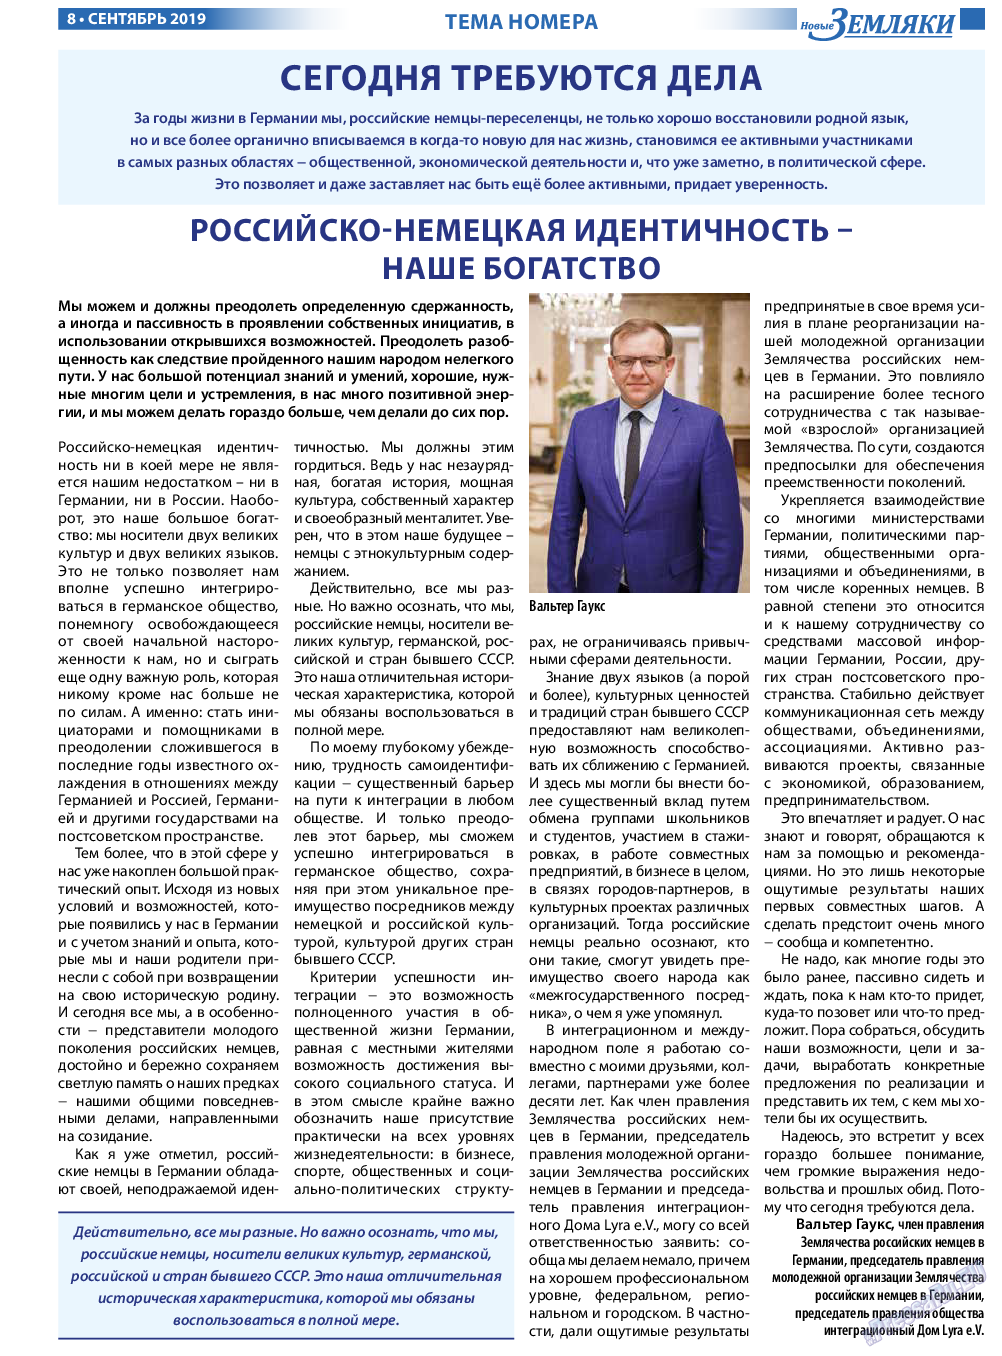 Новые Земляки, газета. 2019 №9 стр.8